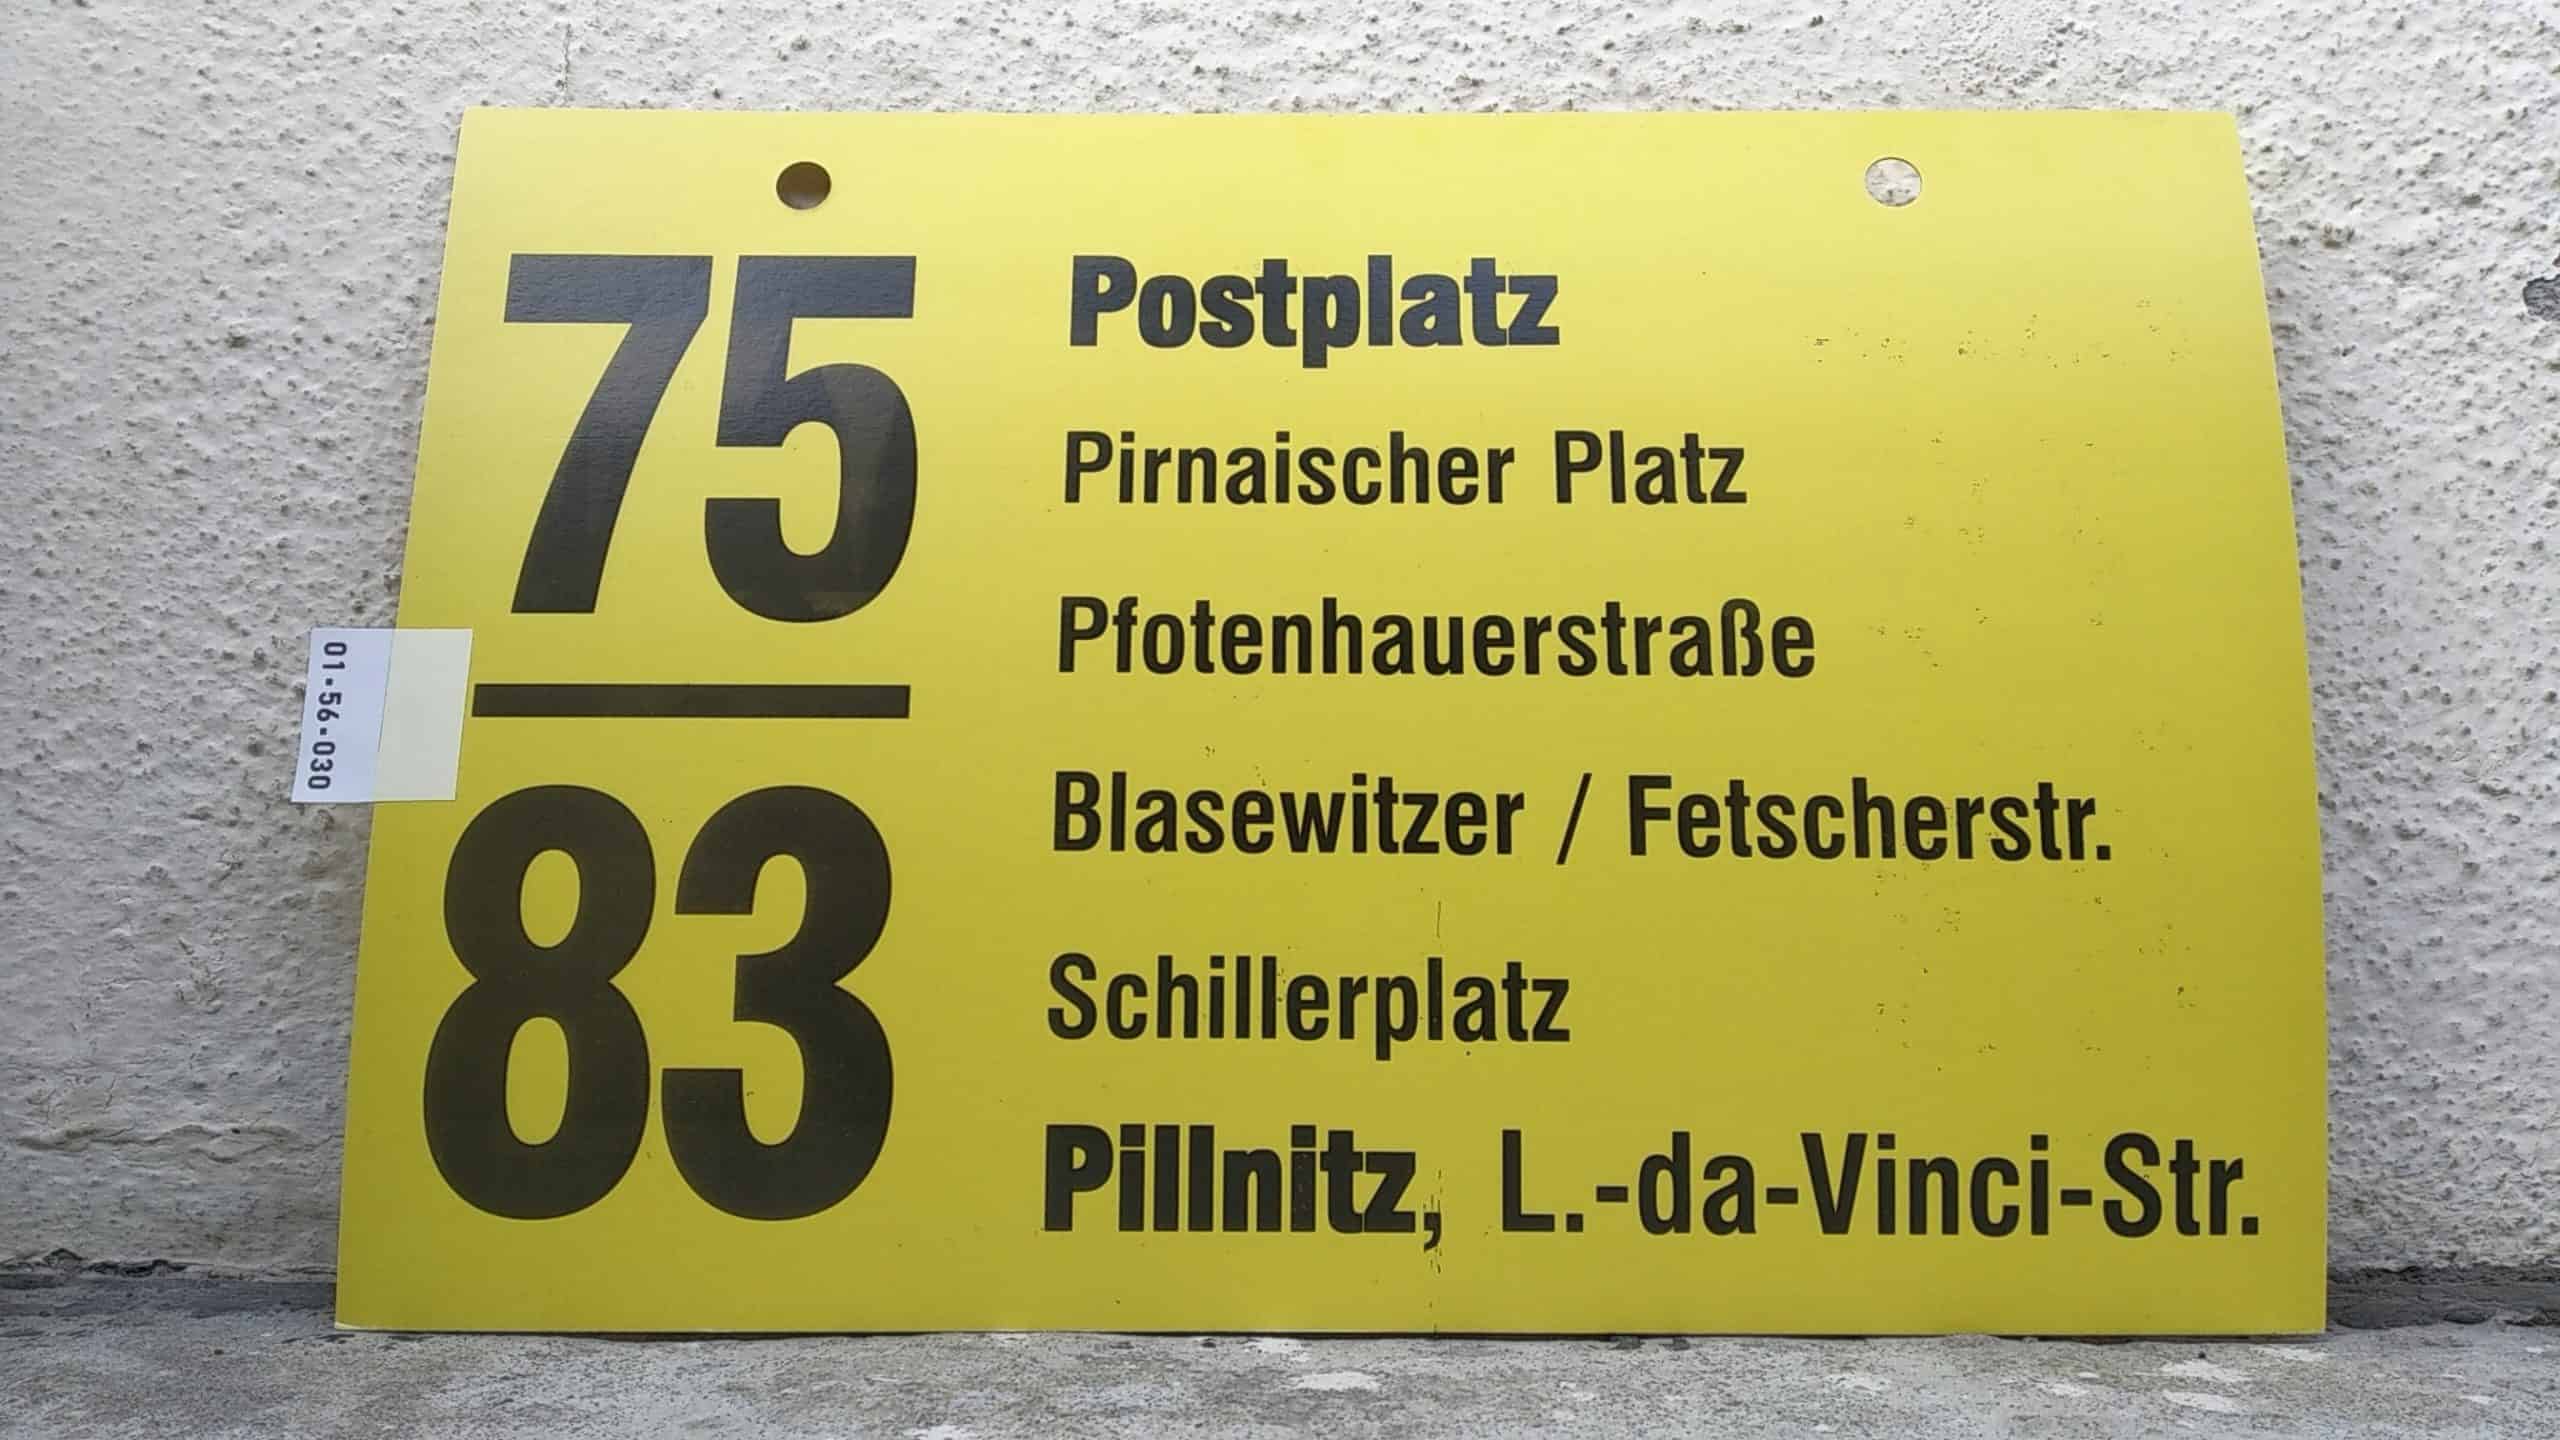 Ein seltenes Bus-Linienschild aus Dresden der Linie 75/83 von Postplatz nach Pillnitz, L.nachdanachVincinachStr. #1